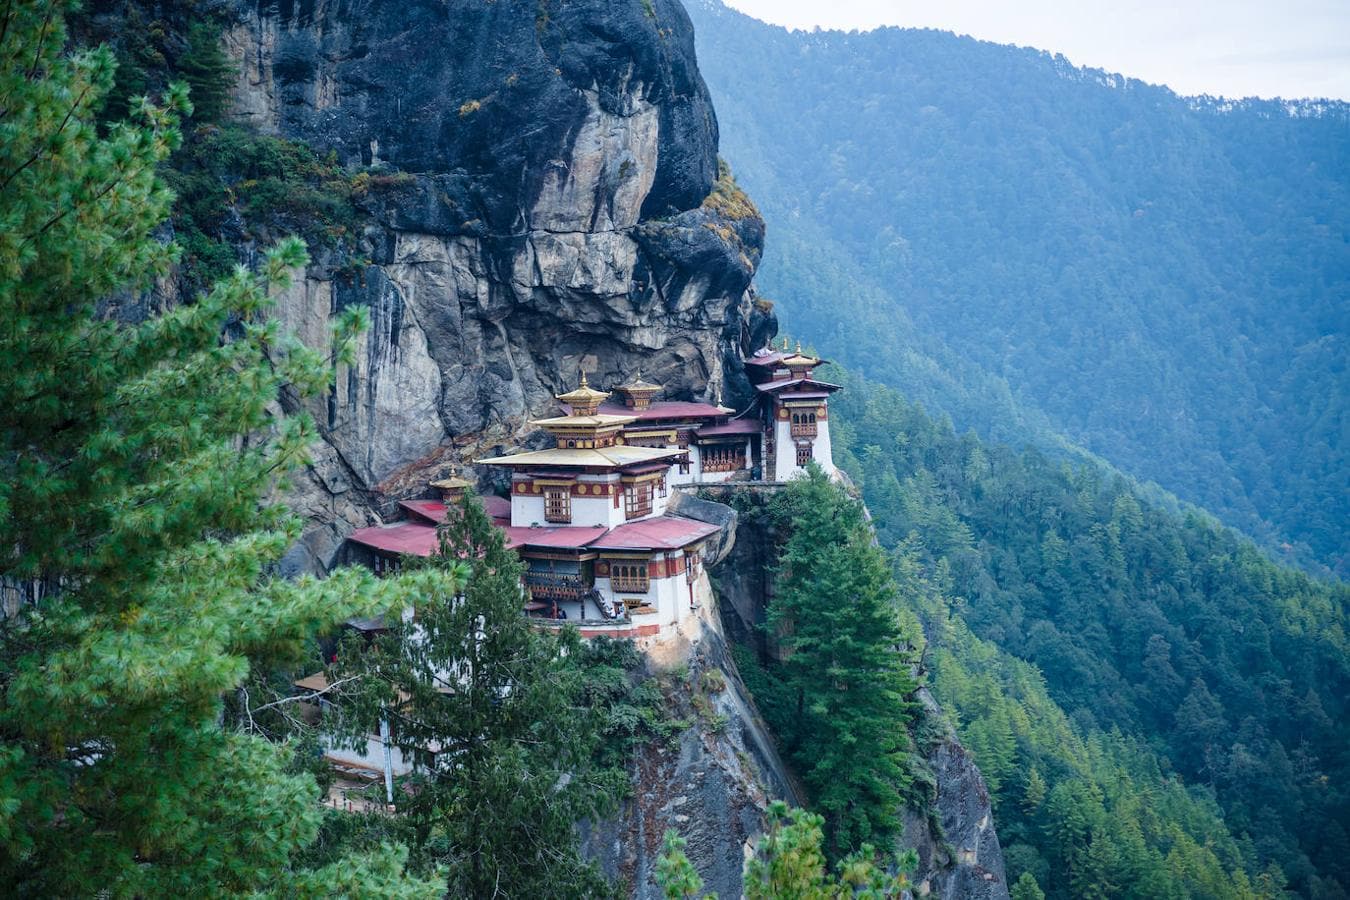 Druk Path (Bután): Esta ruta conocida como el Druk Trek es una ruta de senderismo que combina tramos de baja y media dificultad y que transcurre por los bellos paisajes de la cordillera del Himalaya en pleno territorio de Bután. Bosques de pinos, escarpadas montañas, lagos con aguas cristalinas, monasterios, fortalezas, pequeños poblados... En este trekking que lleva unos seis días desde la ciudad de Paro a Thimpu, no falta detalle.